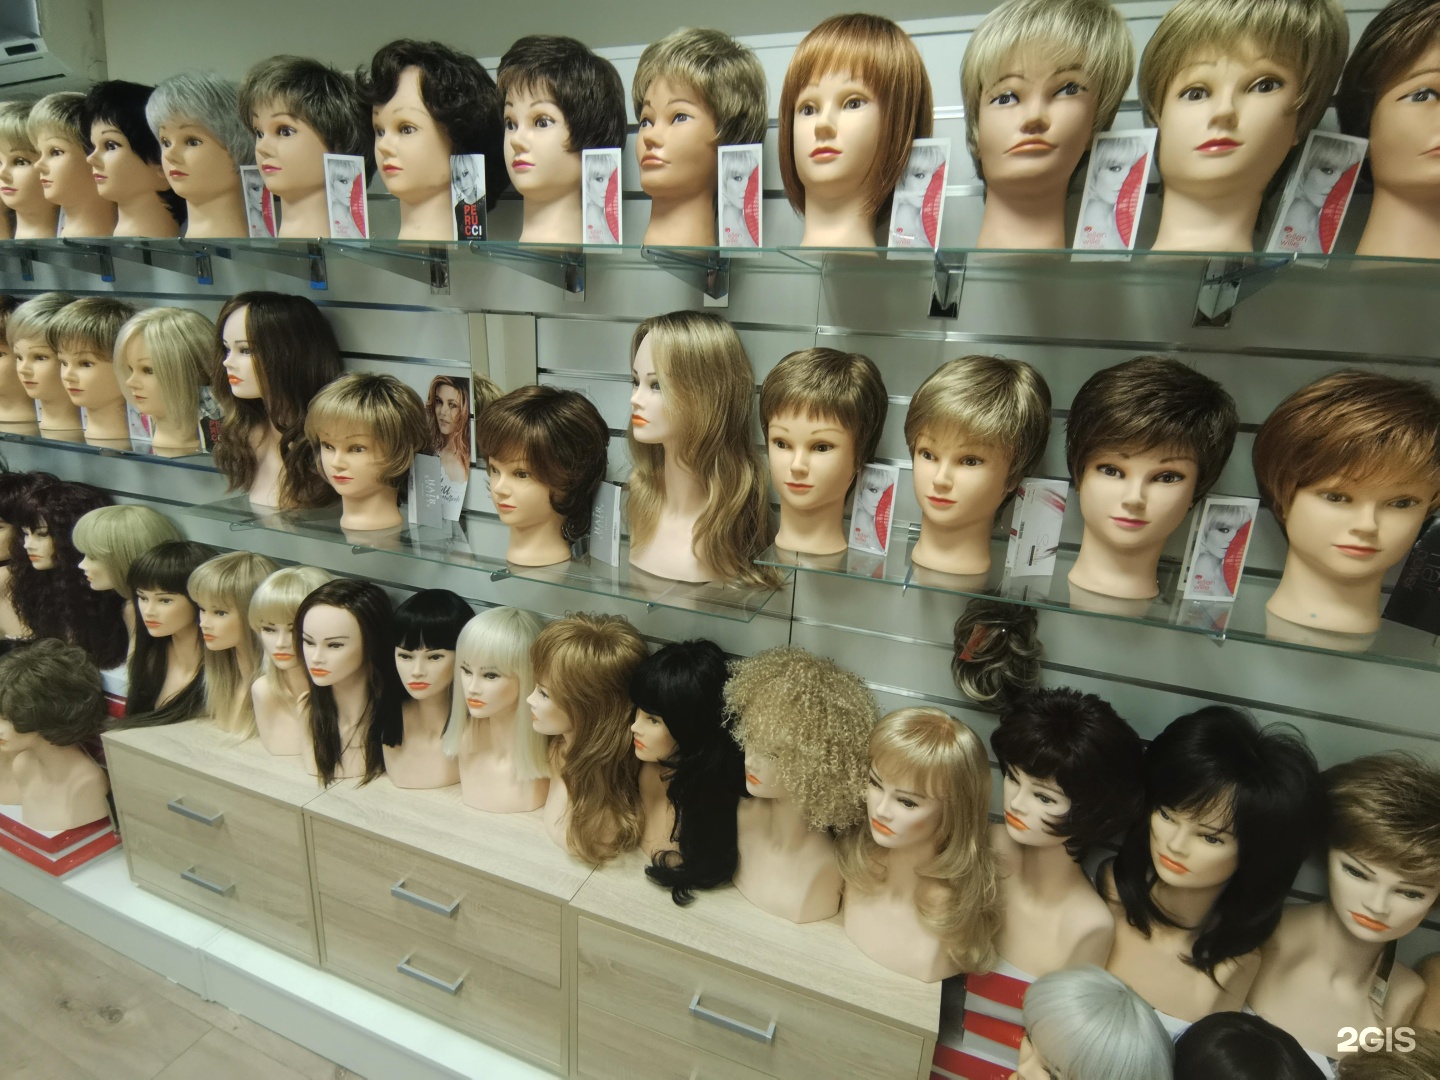 Купить парик в москве адреса магазинов